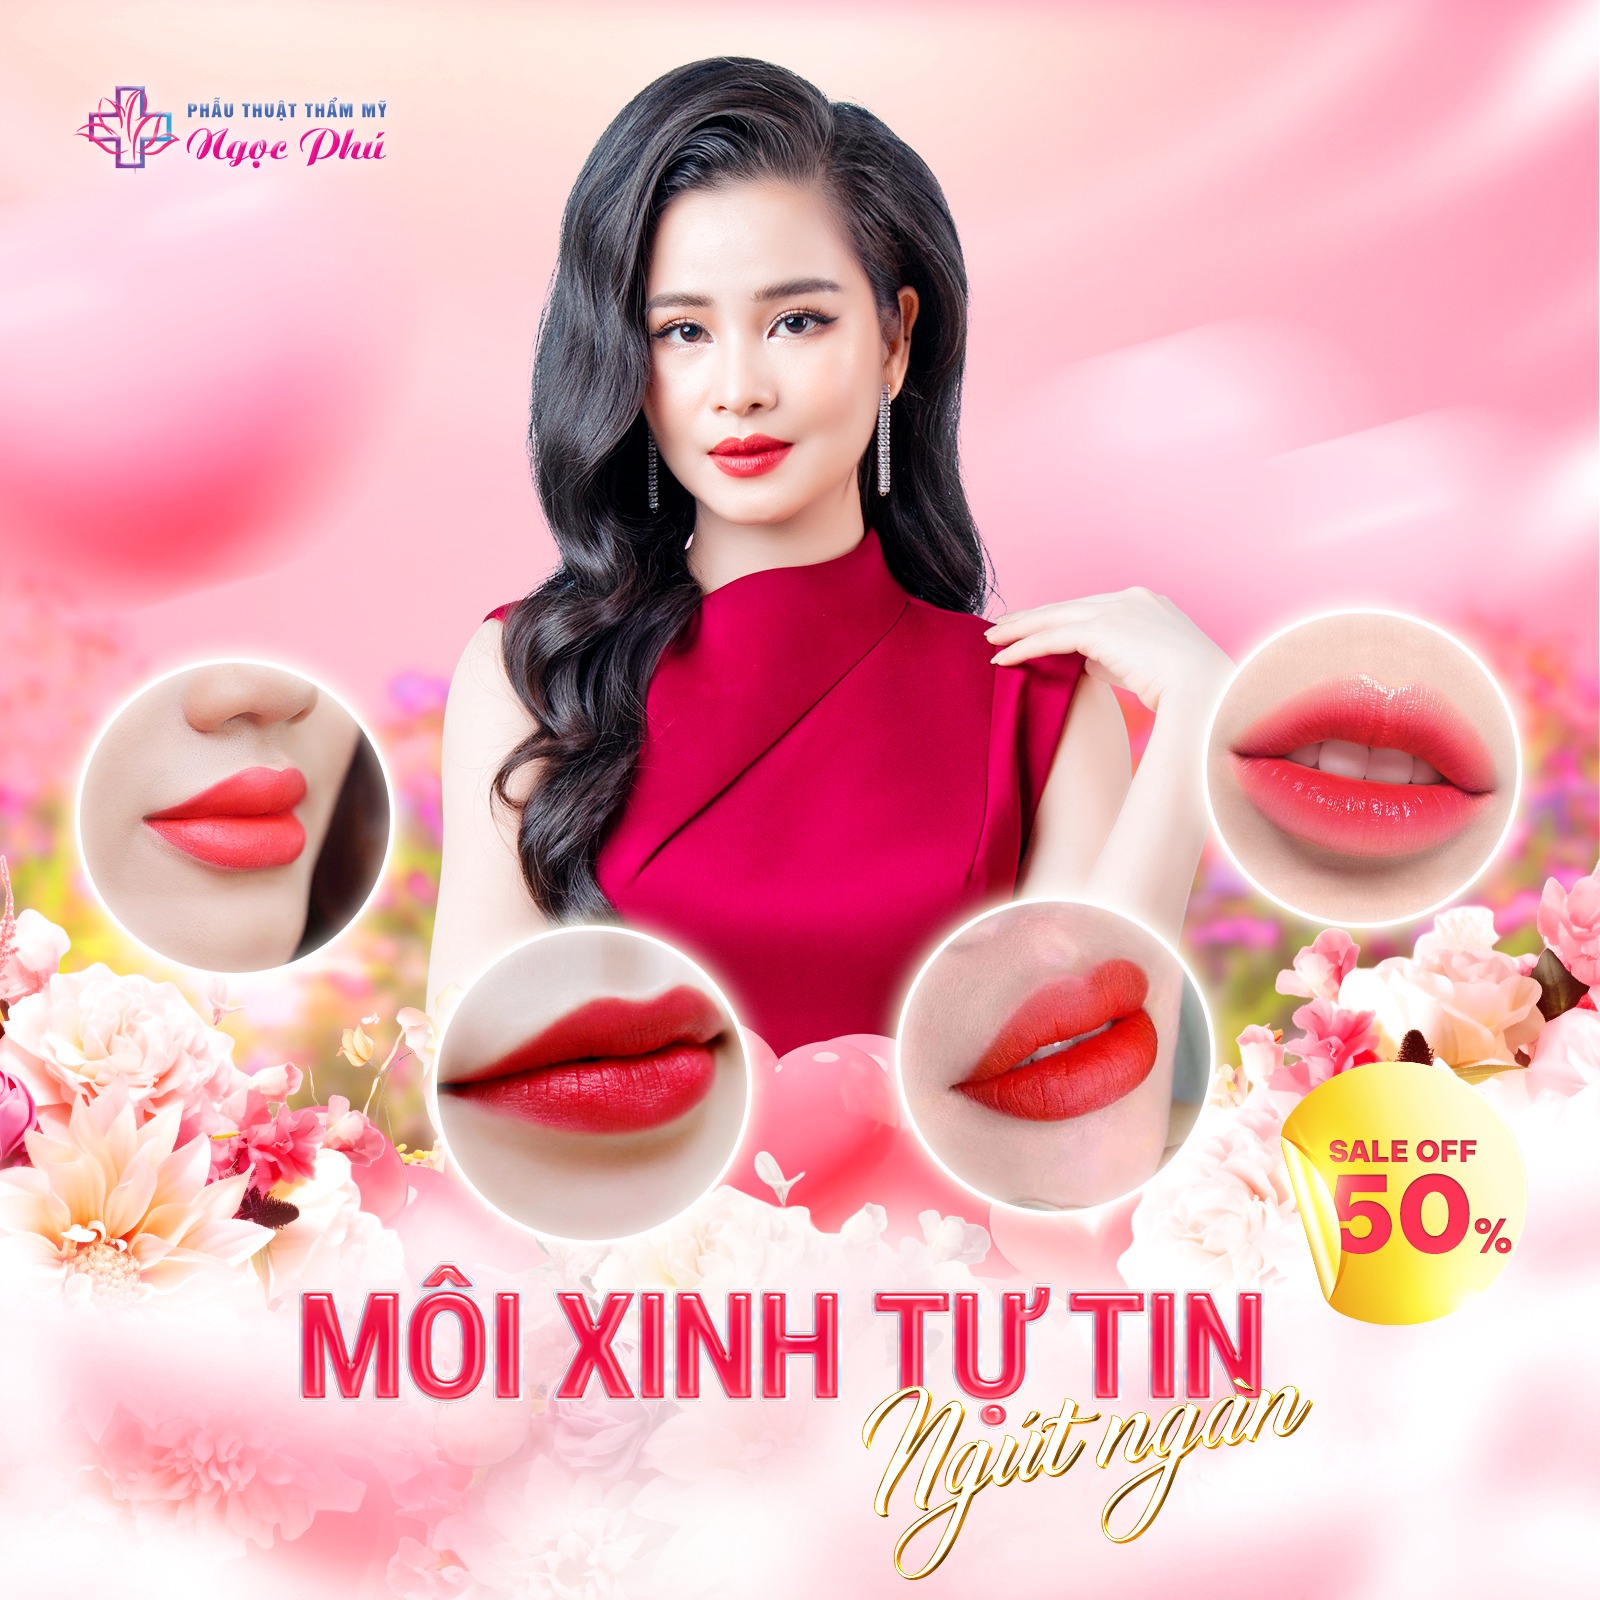 Thẩm mỹ Ngọc Phú là một trong những địa chỉ phun môi đẹp, uy tín tại TP Hồ Chí Minh được nhiều khách hàng tin tưởng lựa chọn.